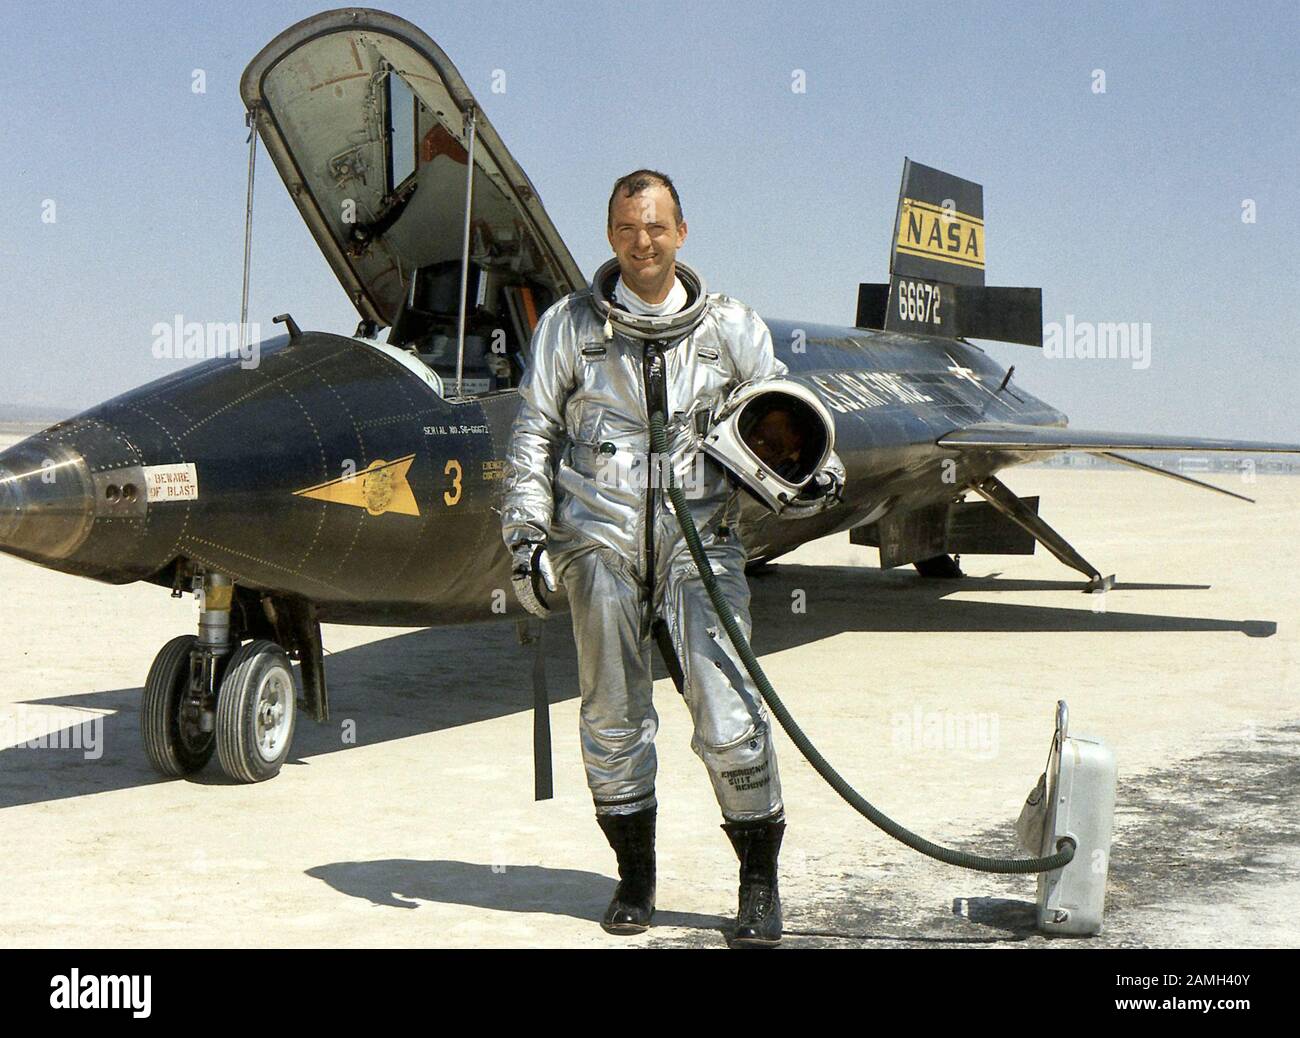 Fotografia del pilota di ricerca della NASA Bill Dana che si trova accanto al X-15 nordamericano, un aereo iperconico a propulsione razzi, il 24 ottobre 1967. Immagine gentilmente concessa dalla NASA. () Foto Stock